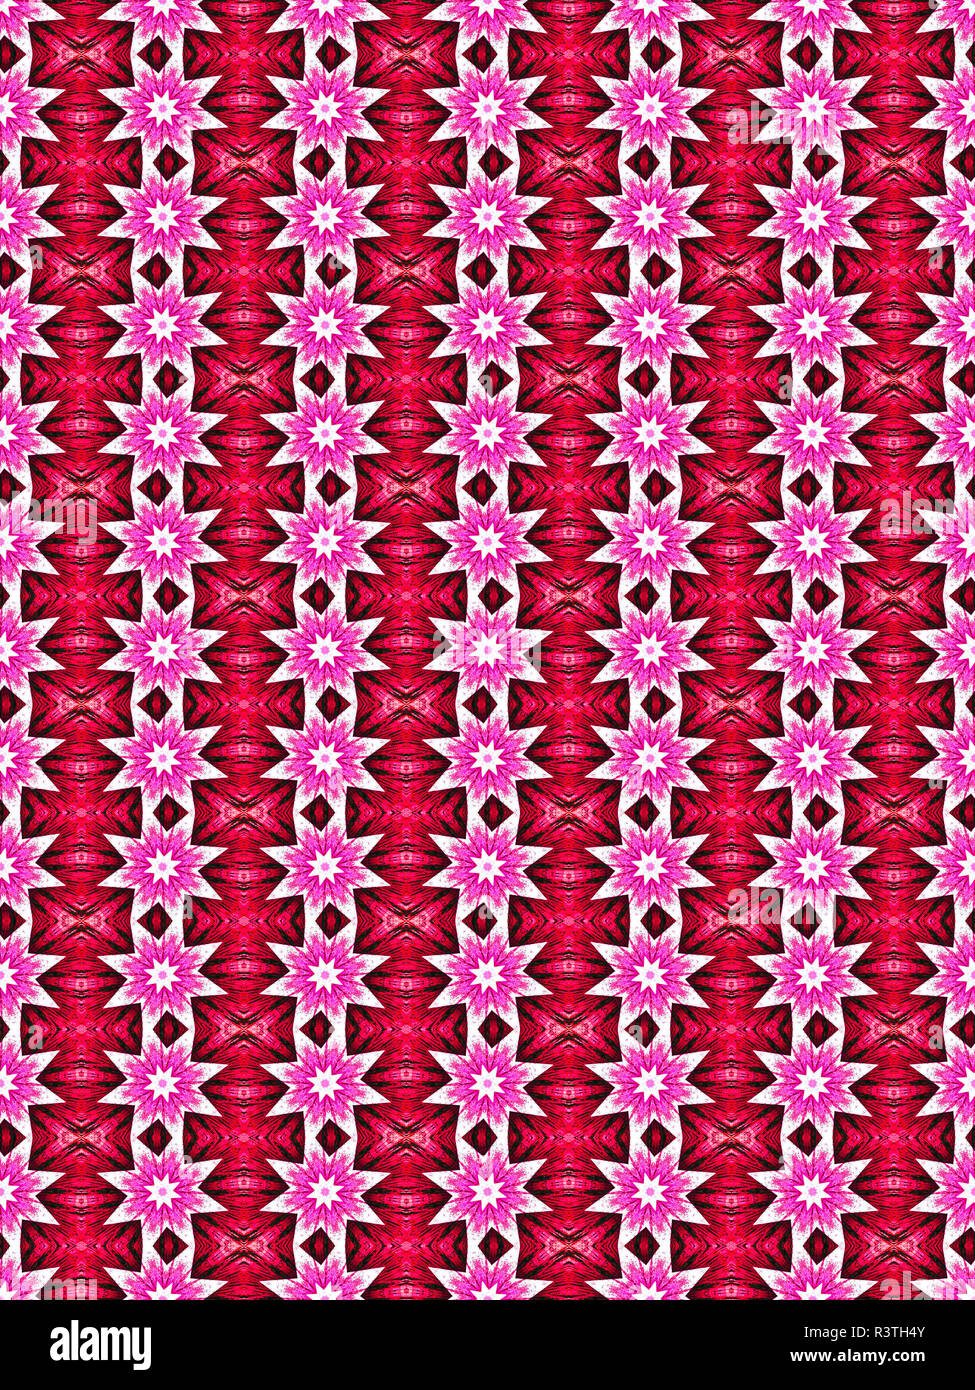 Rosa, viola e bianco verticale e orizzontale di floral patterns sagomati. Foto Stock